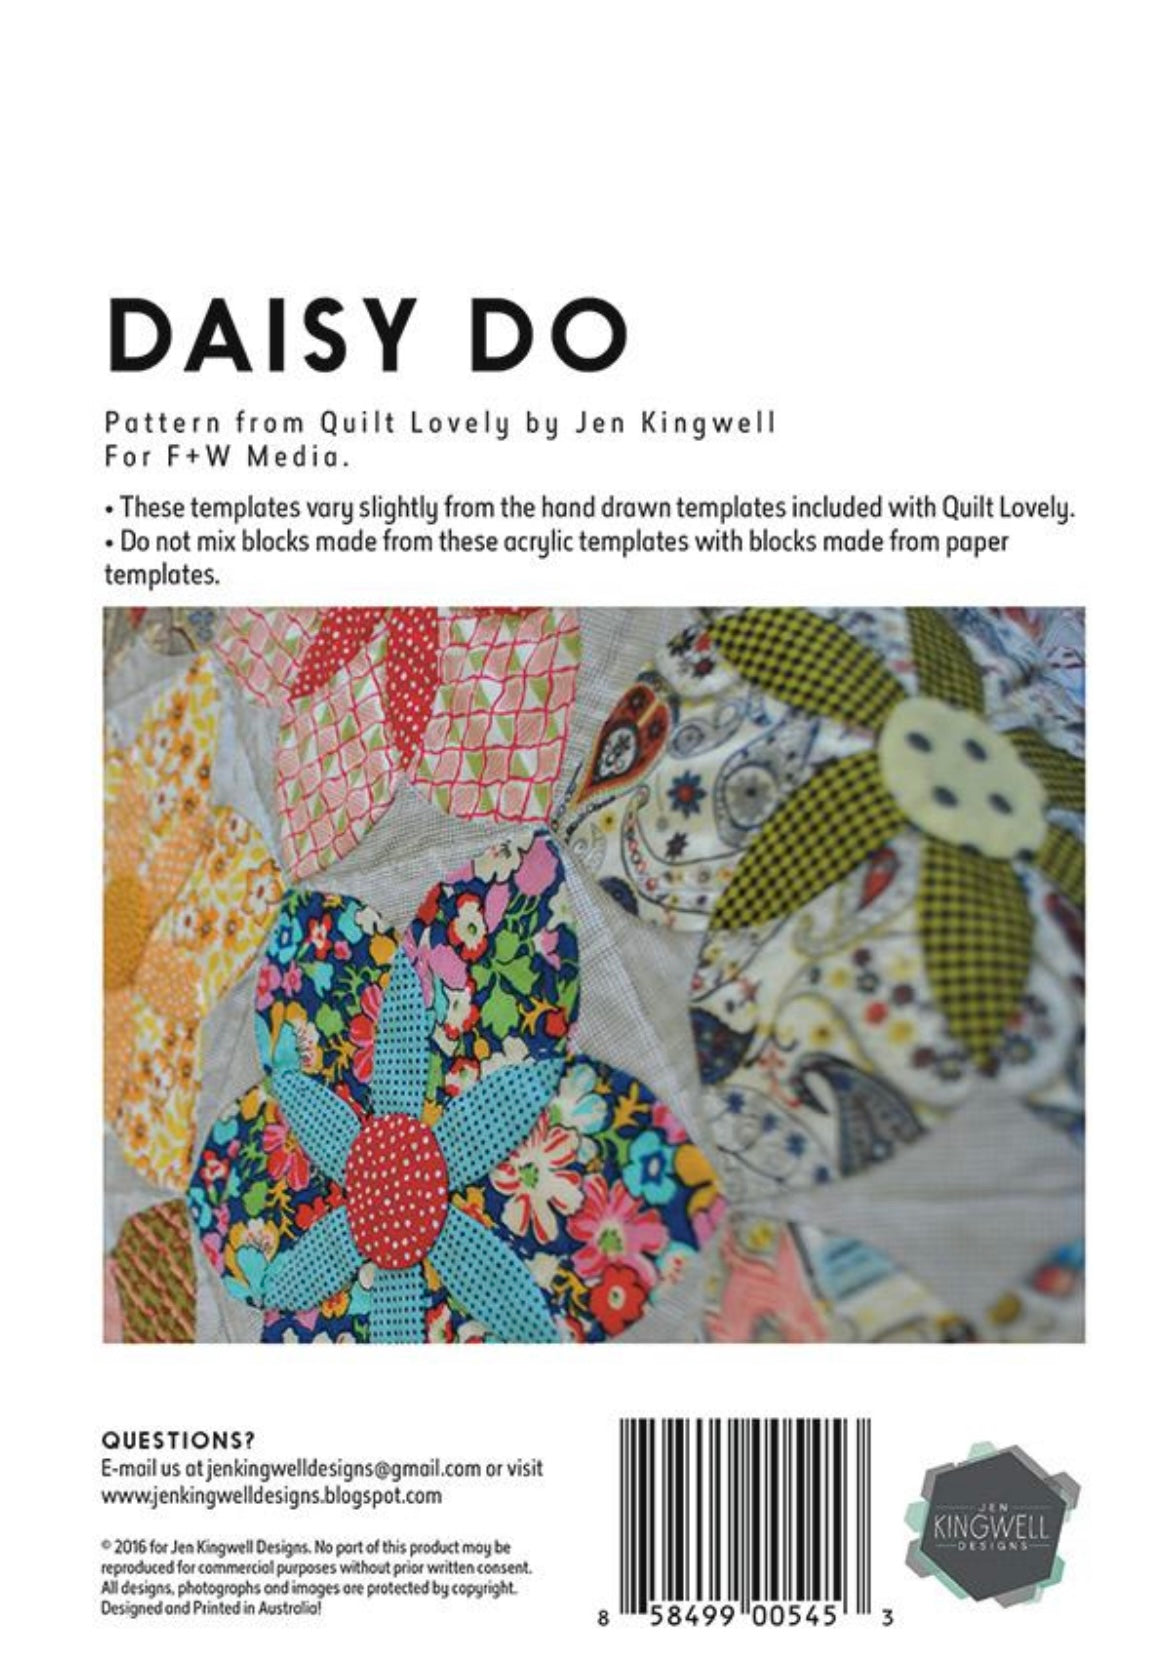 Daisy Do Templates by Jen Kingwell